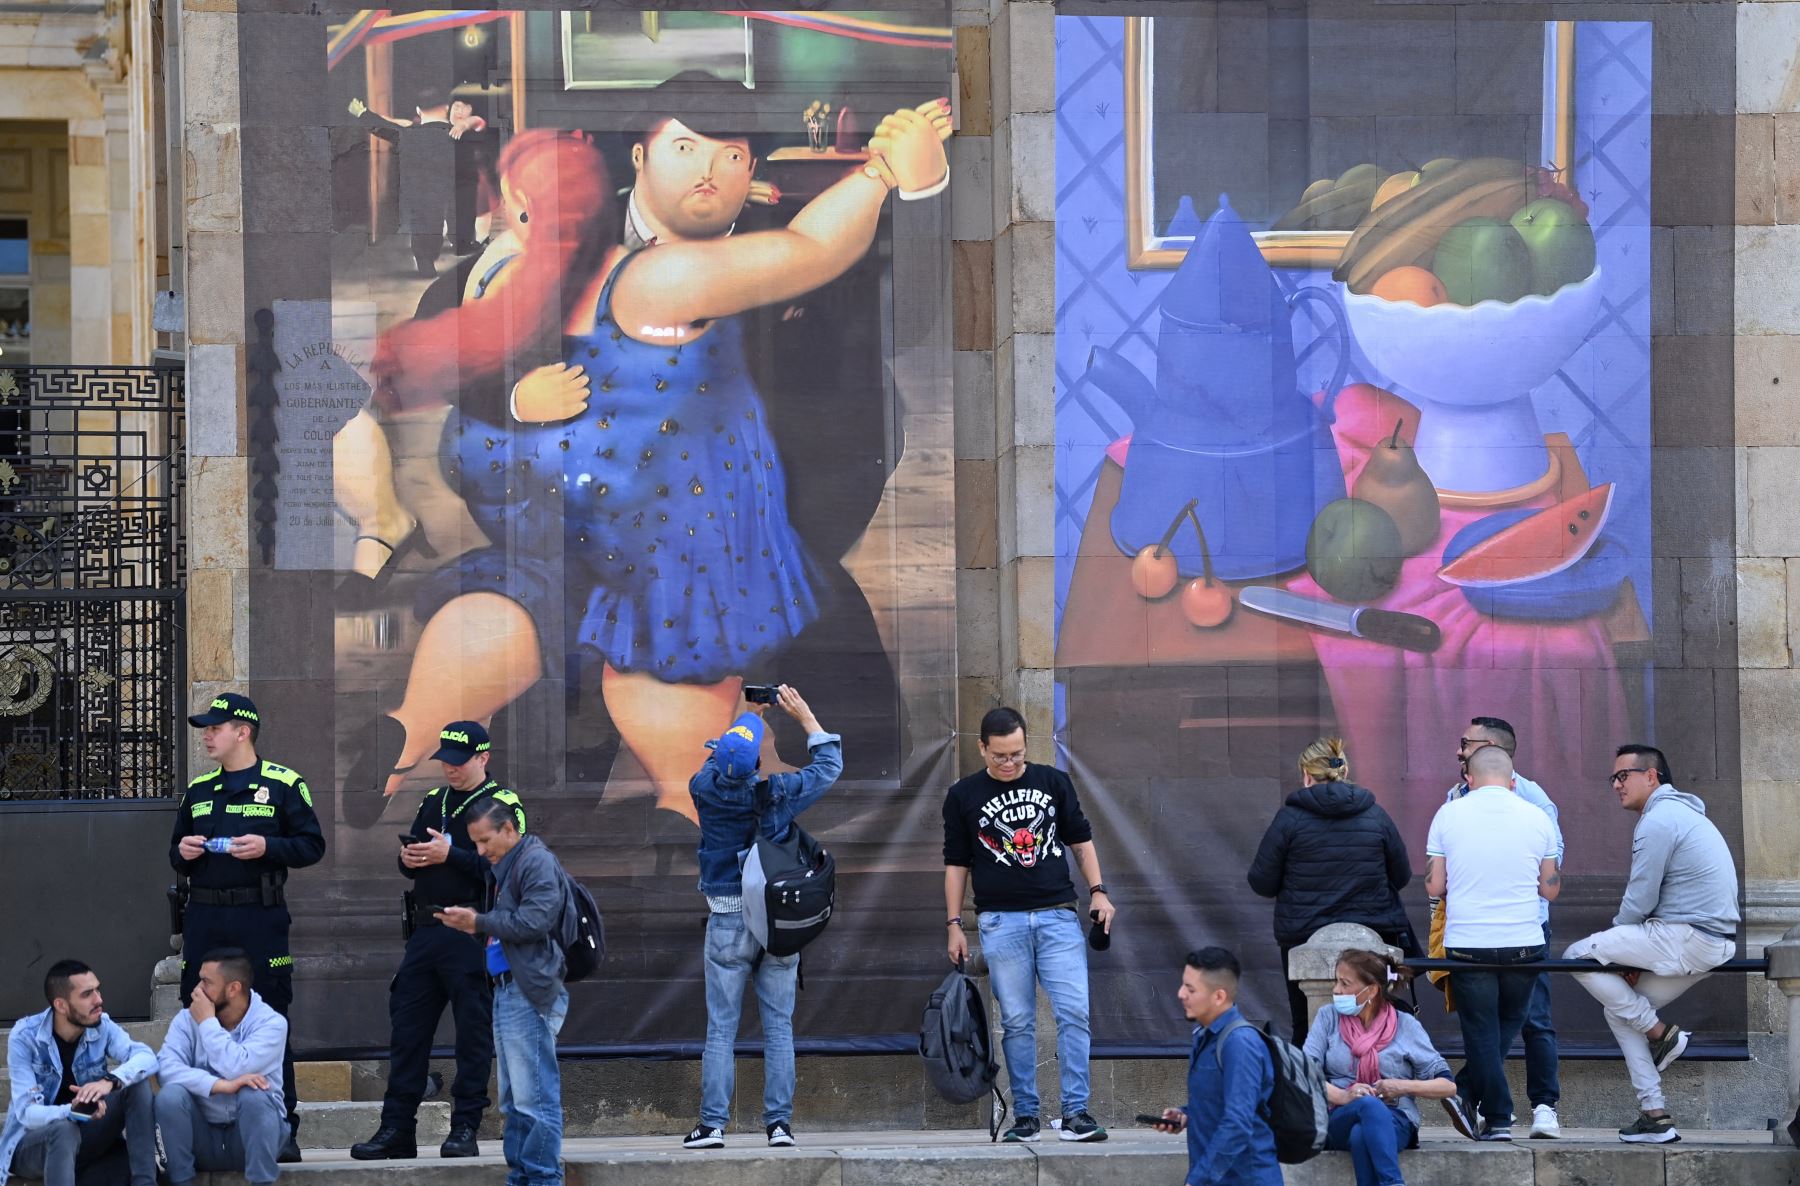 Pinturas del pintor y escultor colombiano Fernando Botero, quien murió a los 91 años el 15 de septiembre, se exhiben en la fachada del Congreso en Bogotá mientras sus restos descansan en la capilla funeraria ubicada en el edificio.
Foto: AFP